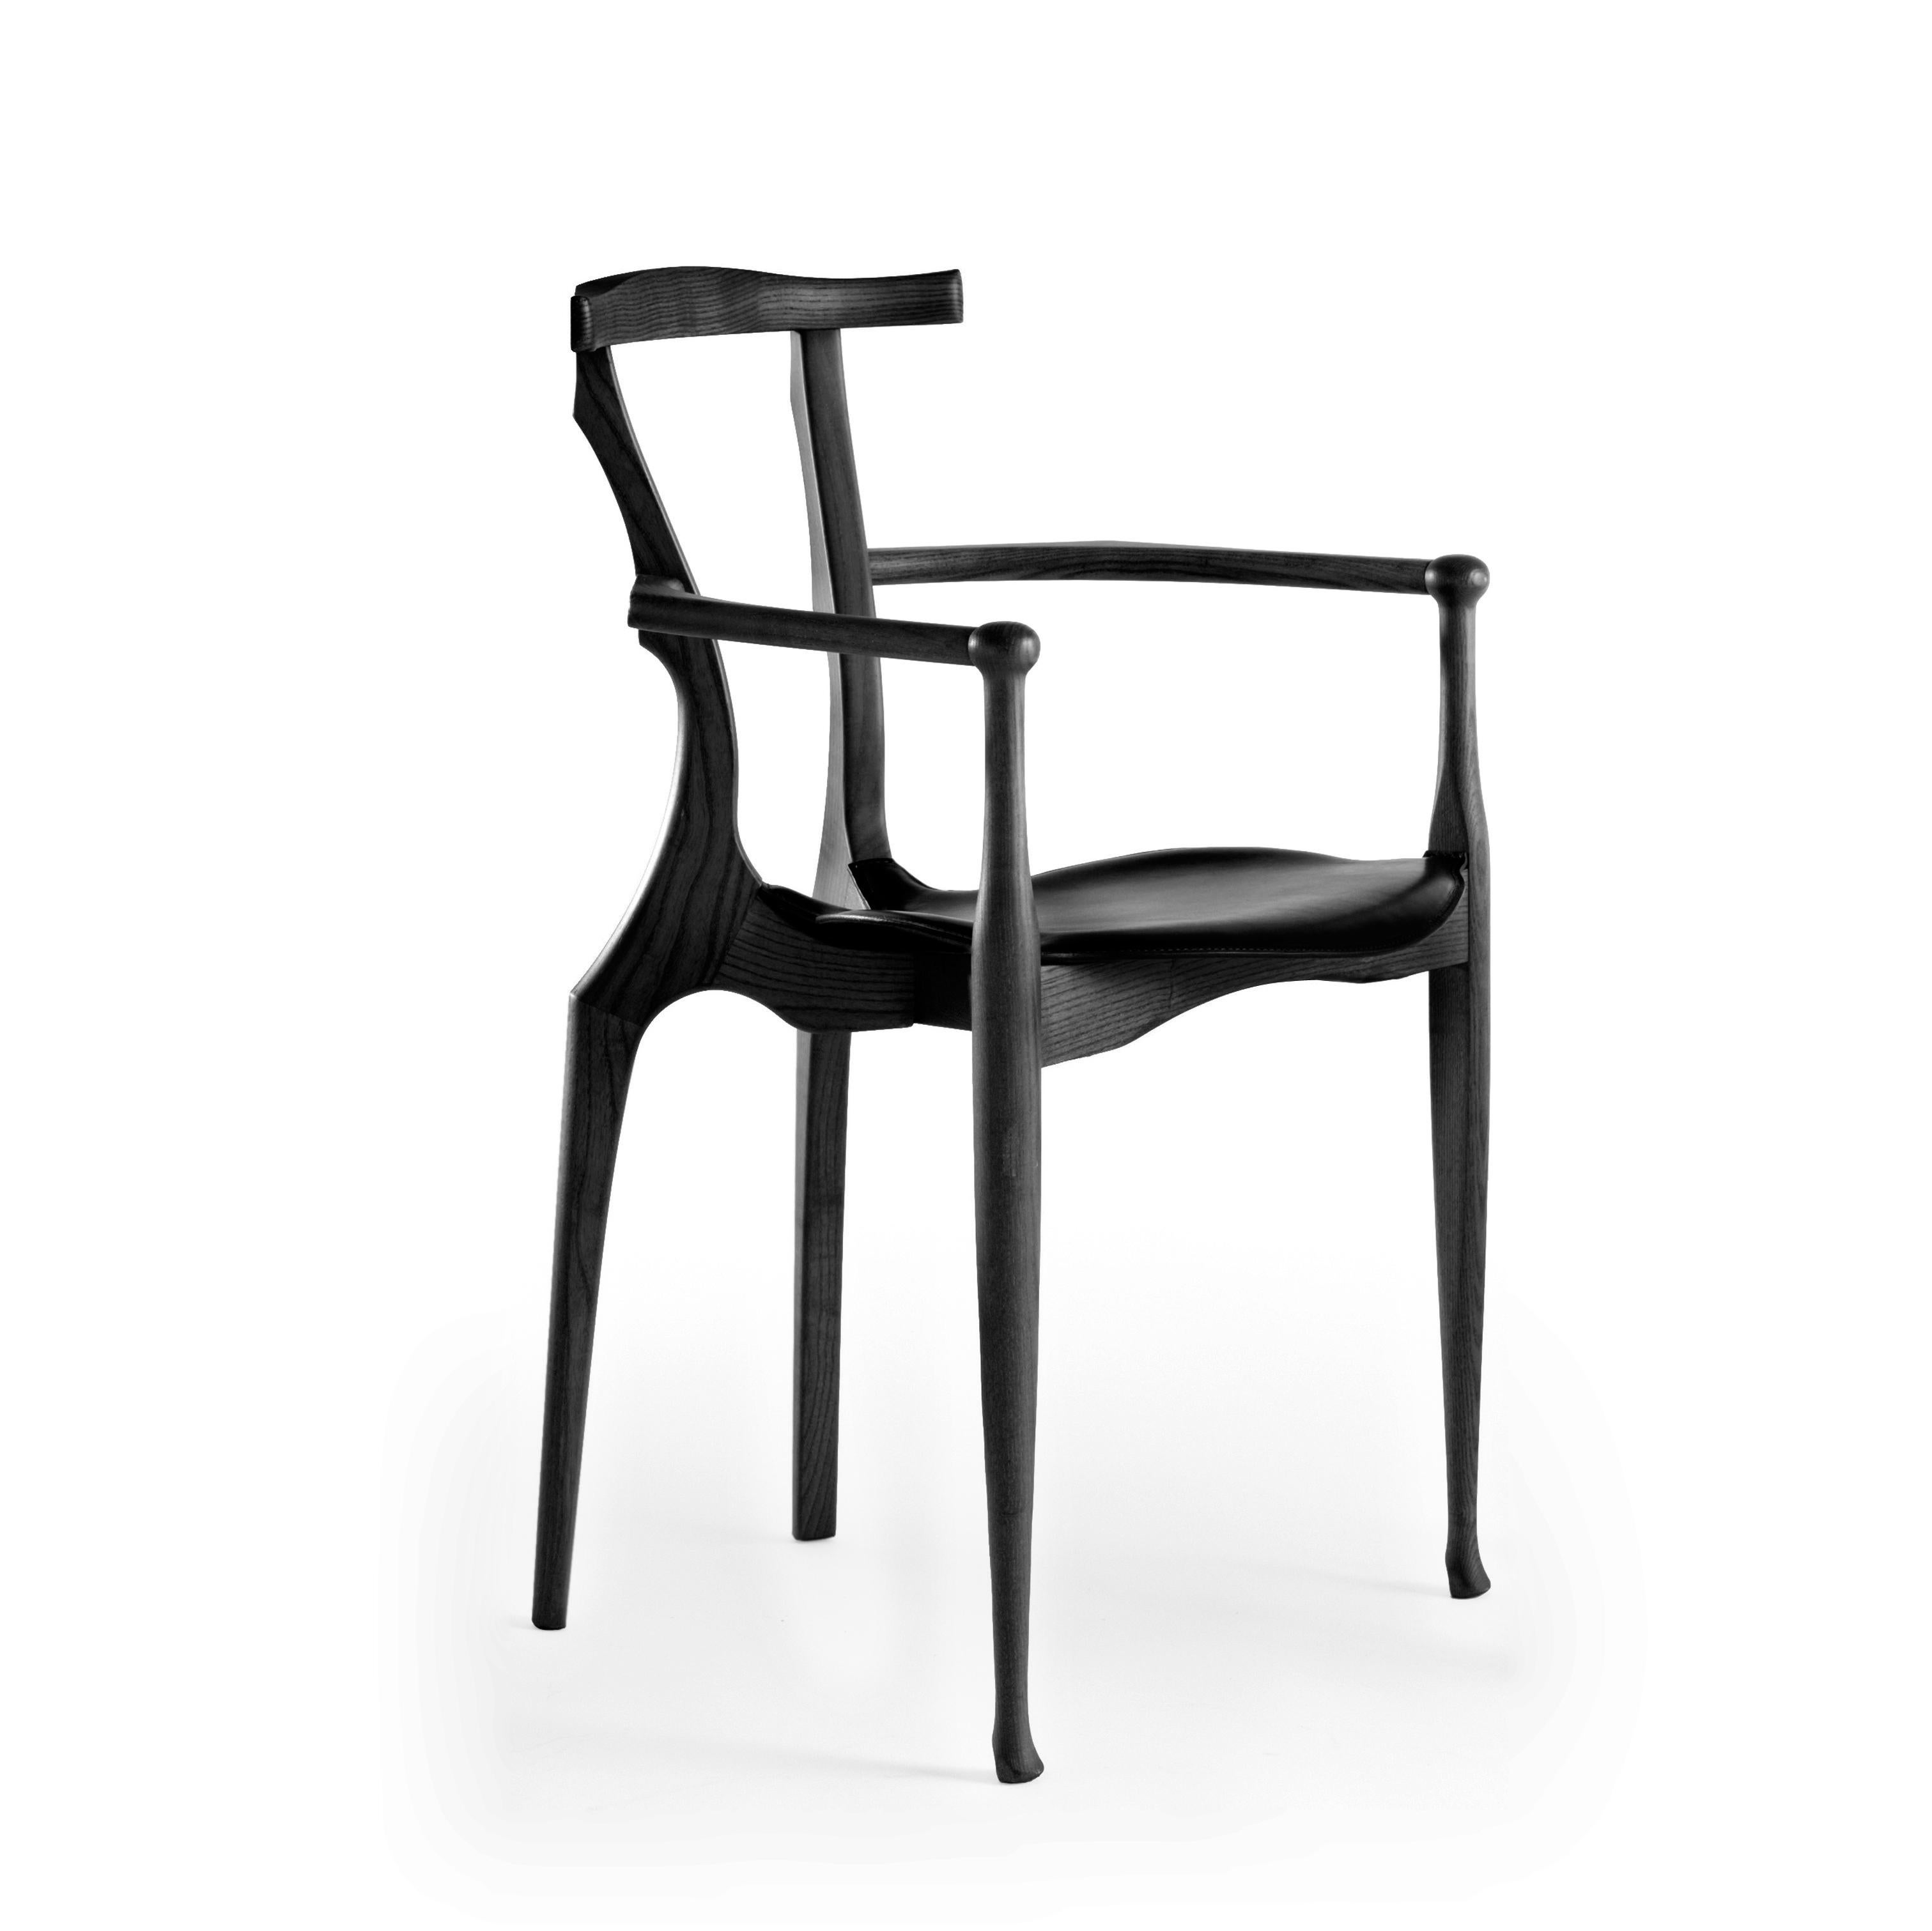 Satz von acht Gaulino-Stühlen, entworfen von Oscar Tusquets, hergestellt von BD Barcelona Design, ca. 2010.

Der 1987 entworfene Stuhl Gaulino wurde 1989 für den Preis für Industriedesign und Adi-Fad und 1990 für den Iberdiseño ausgewählt.
Seitdem